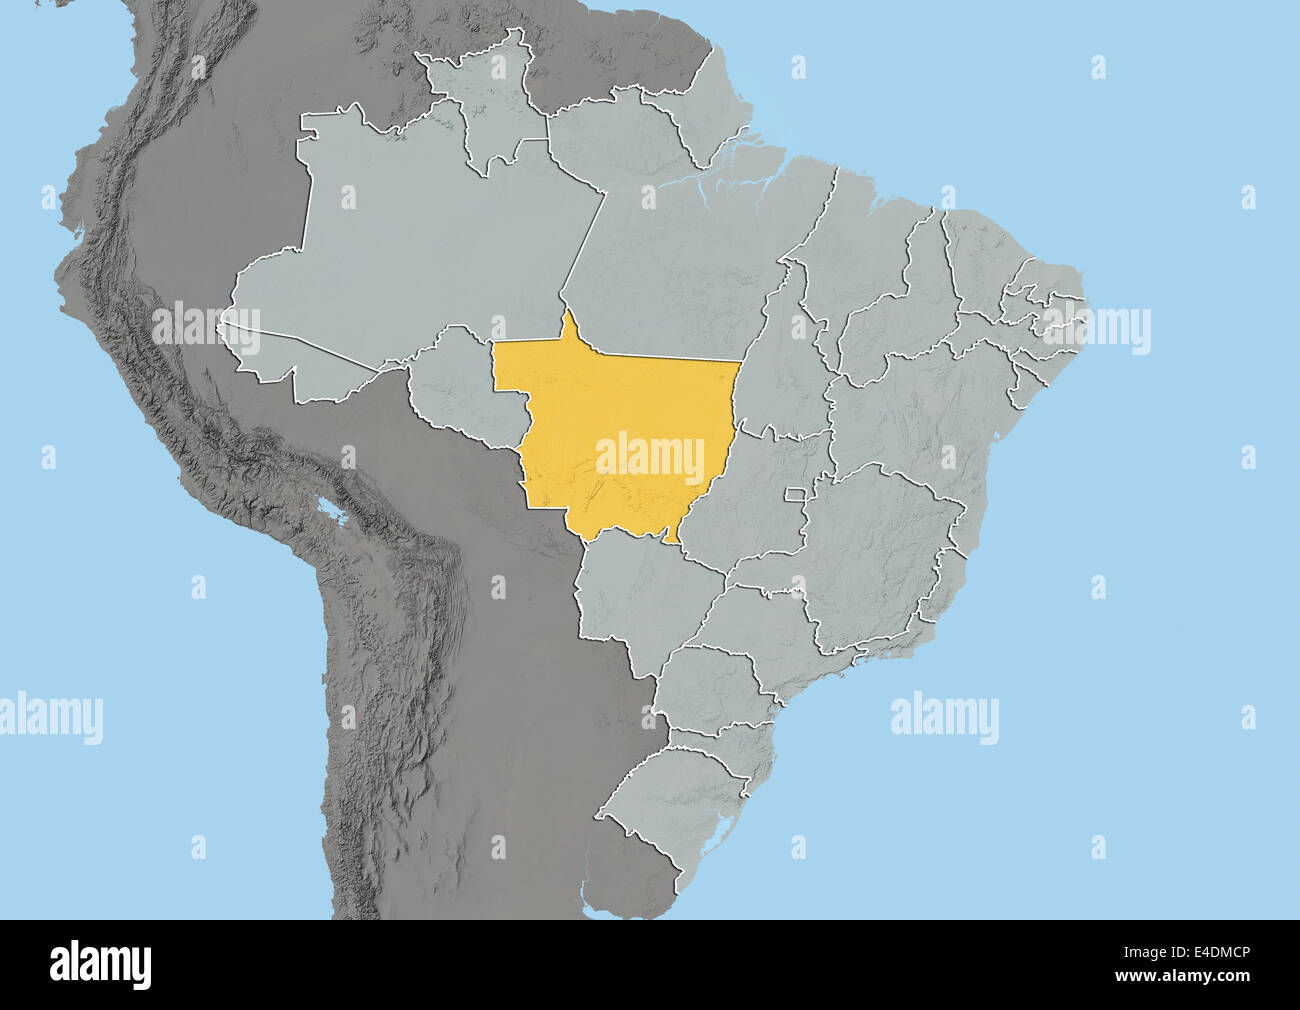 State Of Mato Grosso Brazil Relief Map E4DMCP 